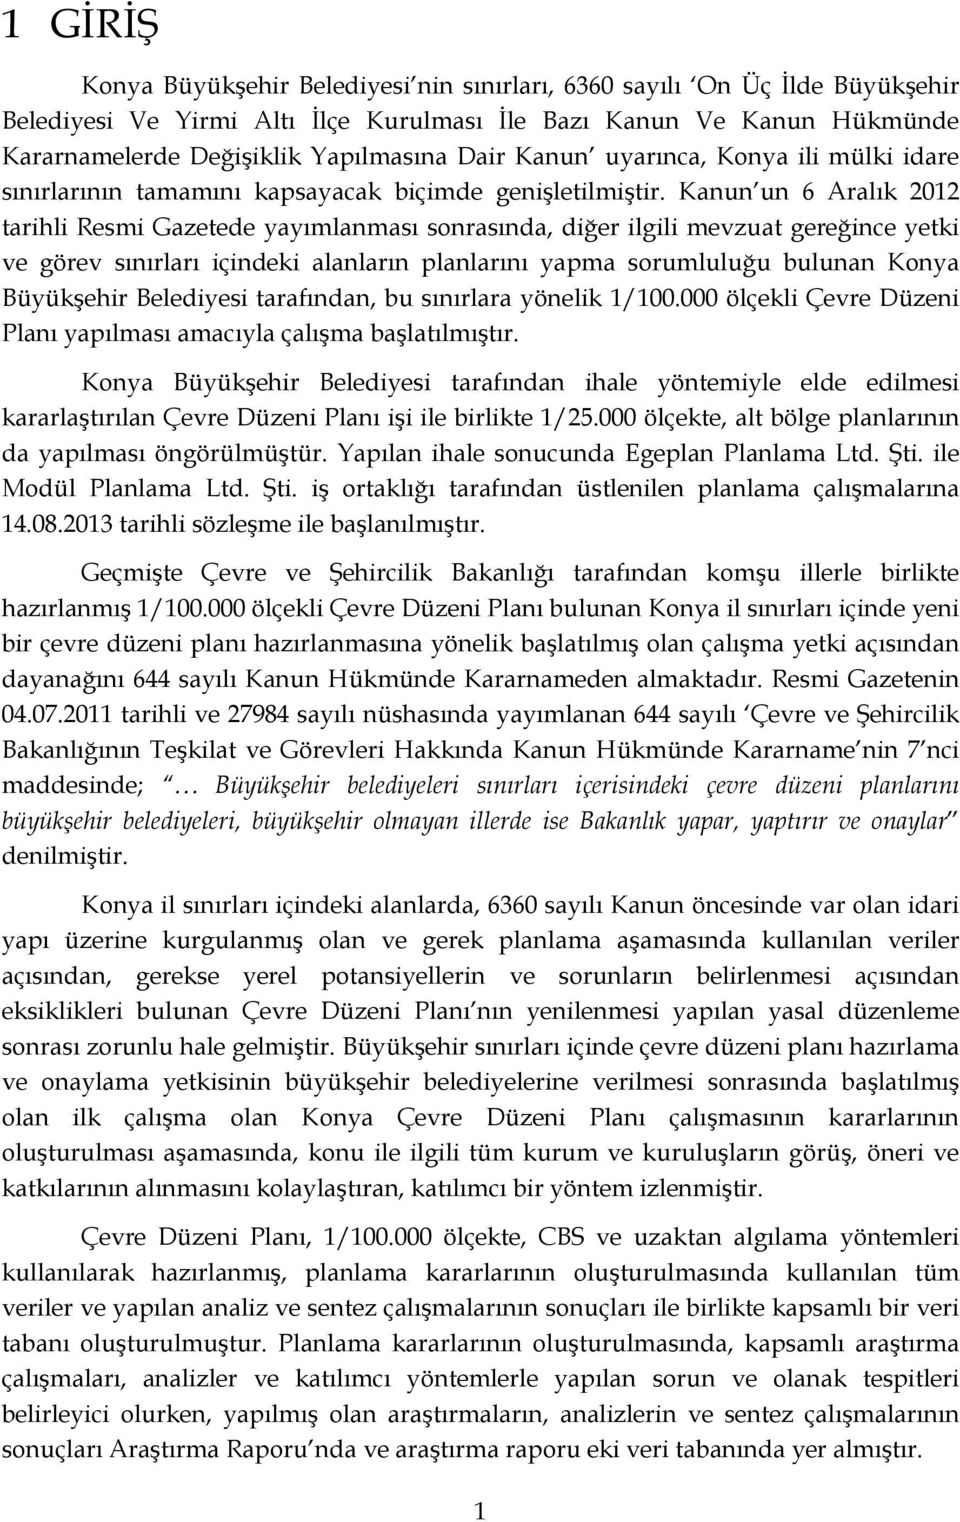 Kanun un 6 Aralık 2012 tarihli Resmi Gazetede yayımlanması sonrasında, diğer ilgili mevzuat gereğince yetki ve görev sınırları içindeki alanların planlarını yapma sorumluluğu bulunan Konya Büyükşehir